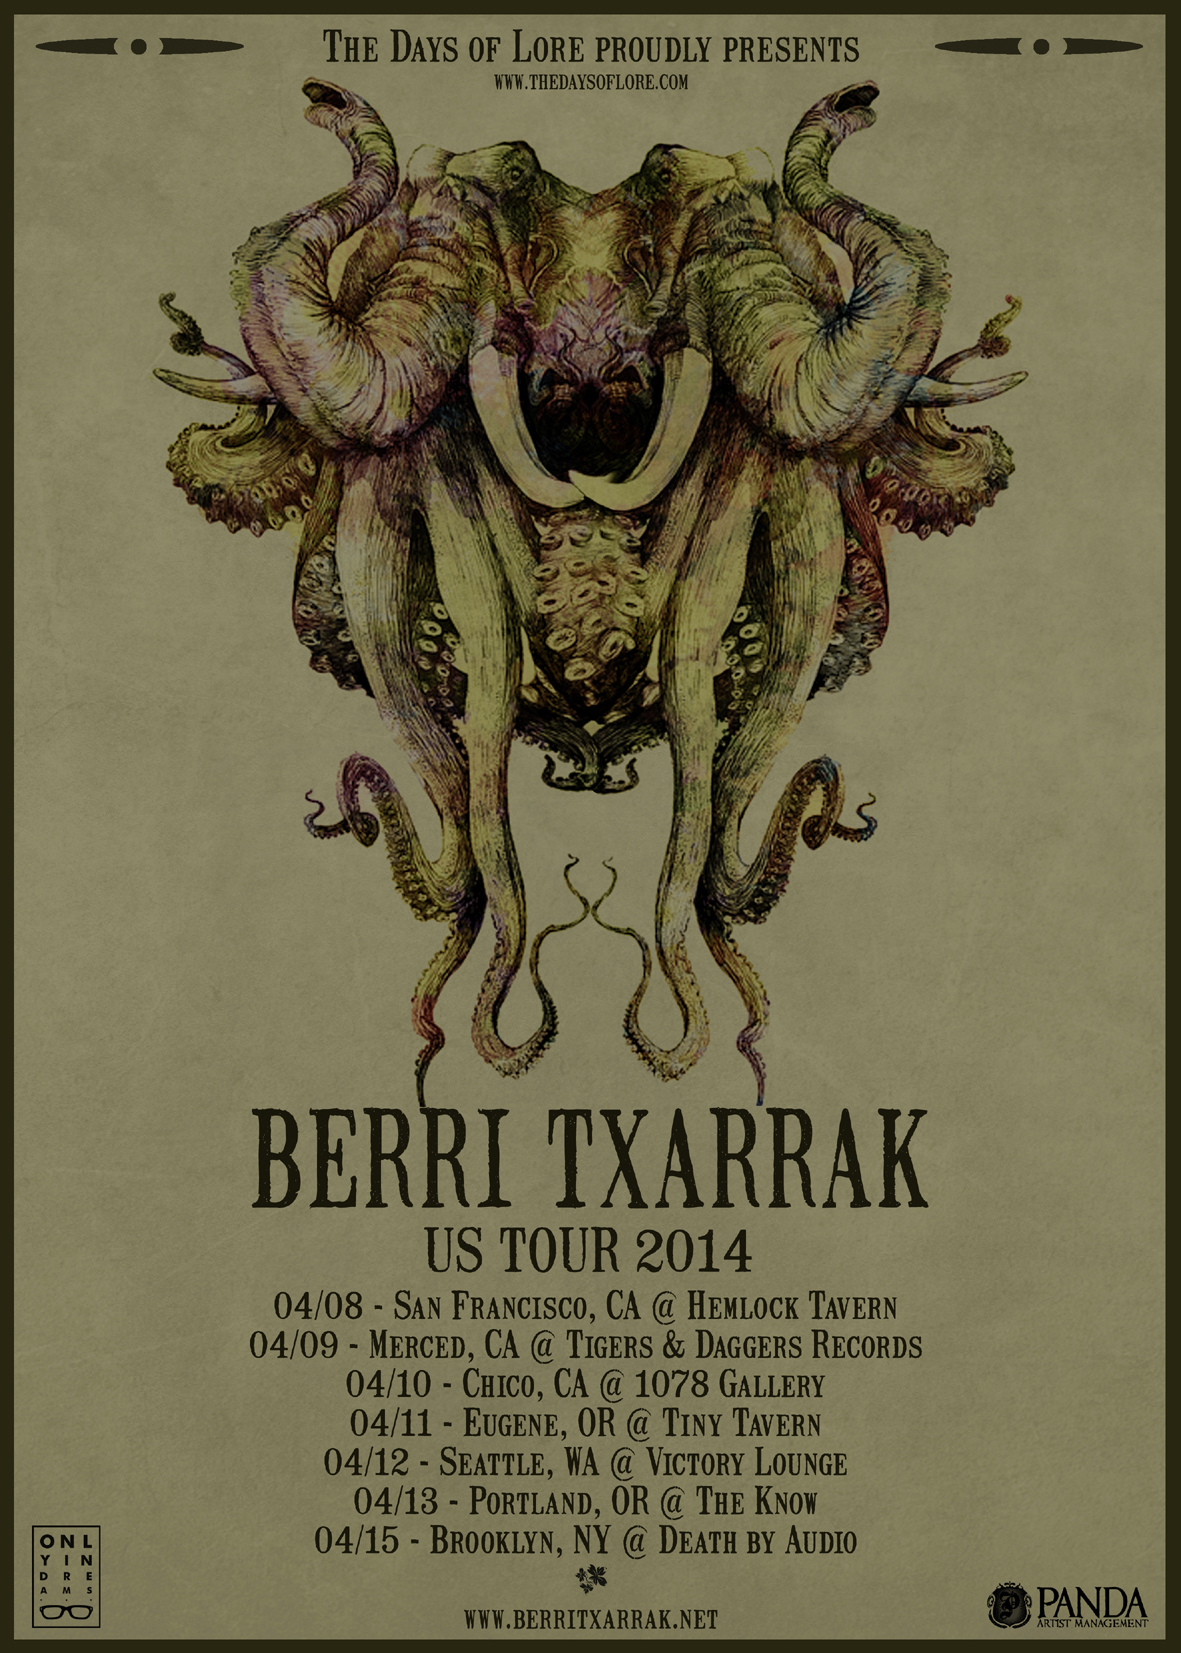 BERRI TXARRAK USA TOUR 2014 IN APRIL